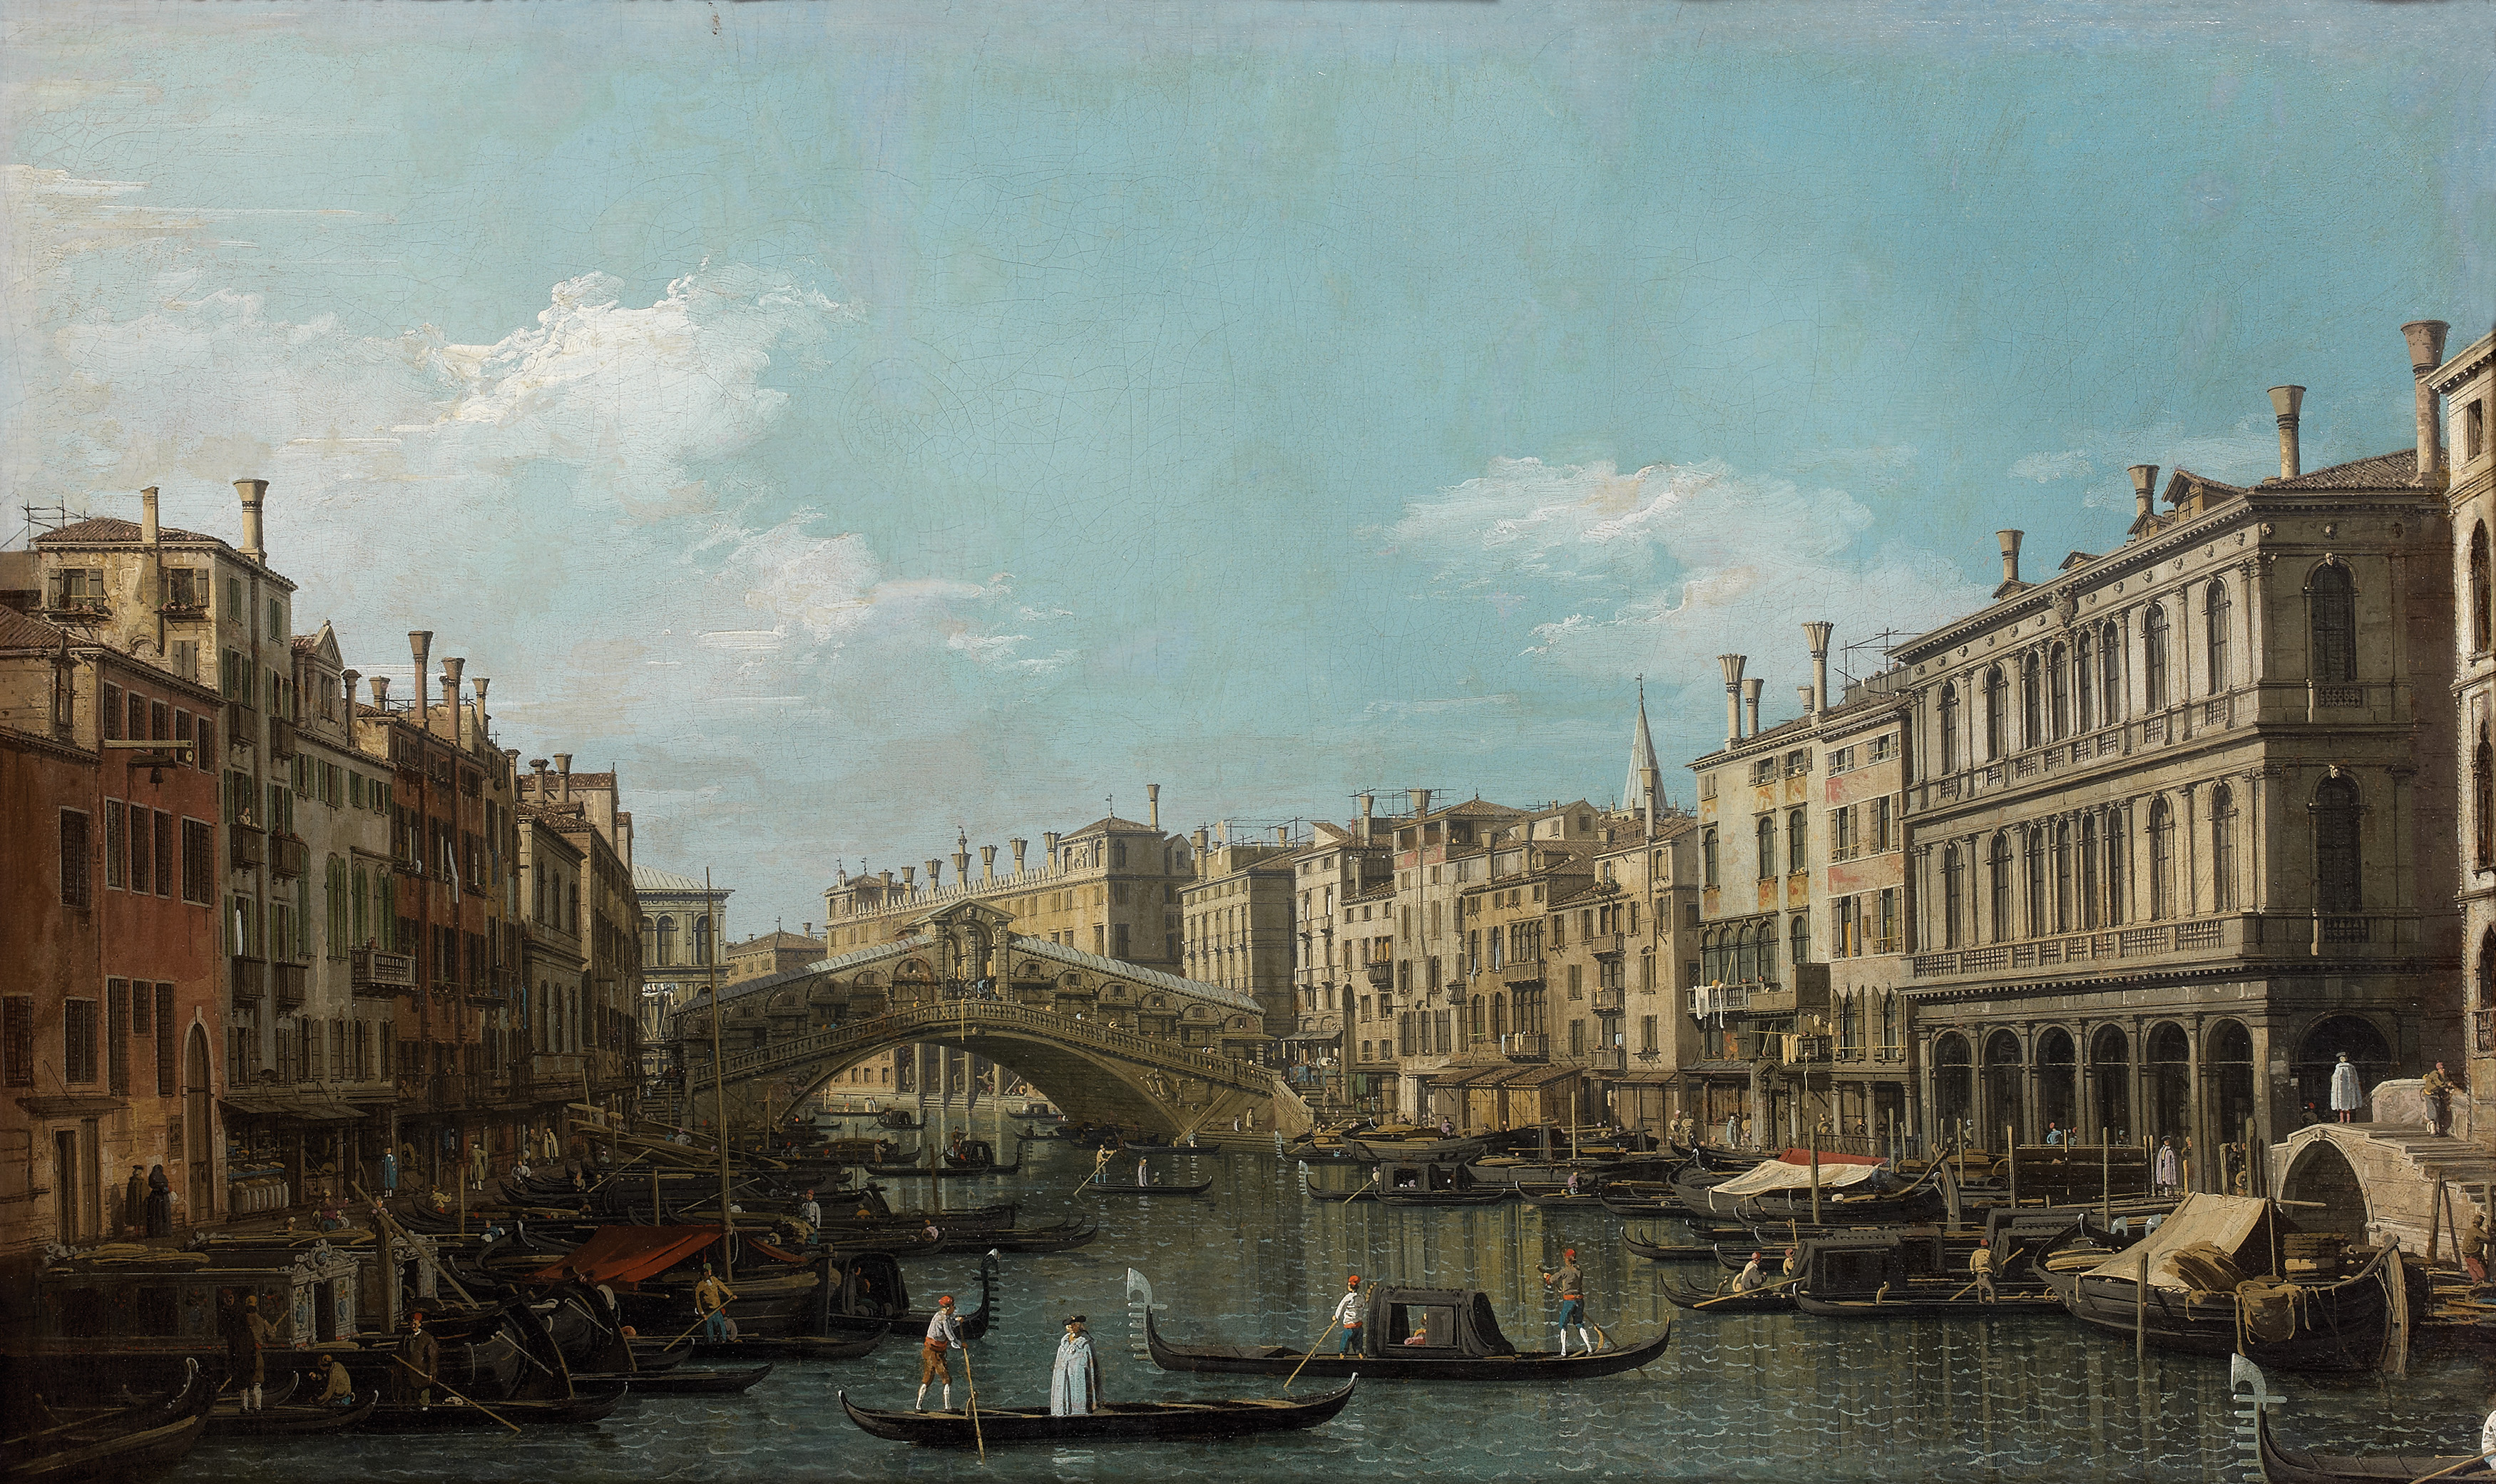 Canaletto, 'Il Canal Grande con il Ponte di Rialto da sud, Venezia', 1740 circa, olio su tela. Parigi, Institut de France, Musée Jacquemart André ( Culturespaces - Musée Jacquemart André)